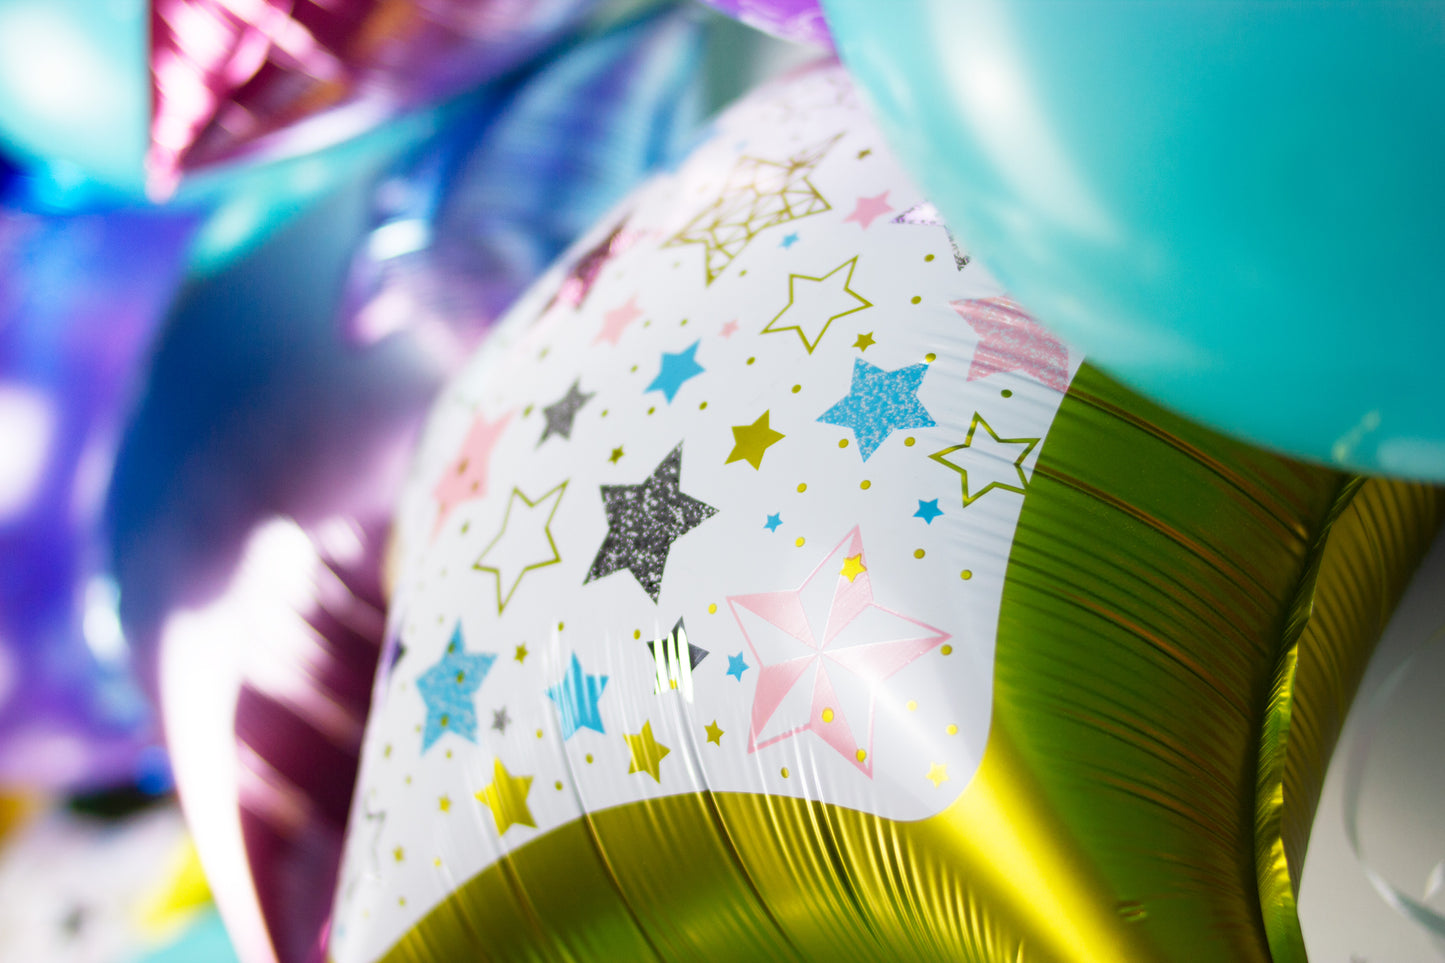 Gold & White Star Foil Balloons - Pack of 3